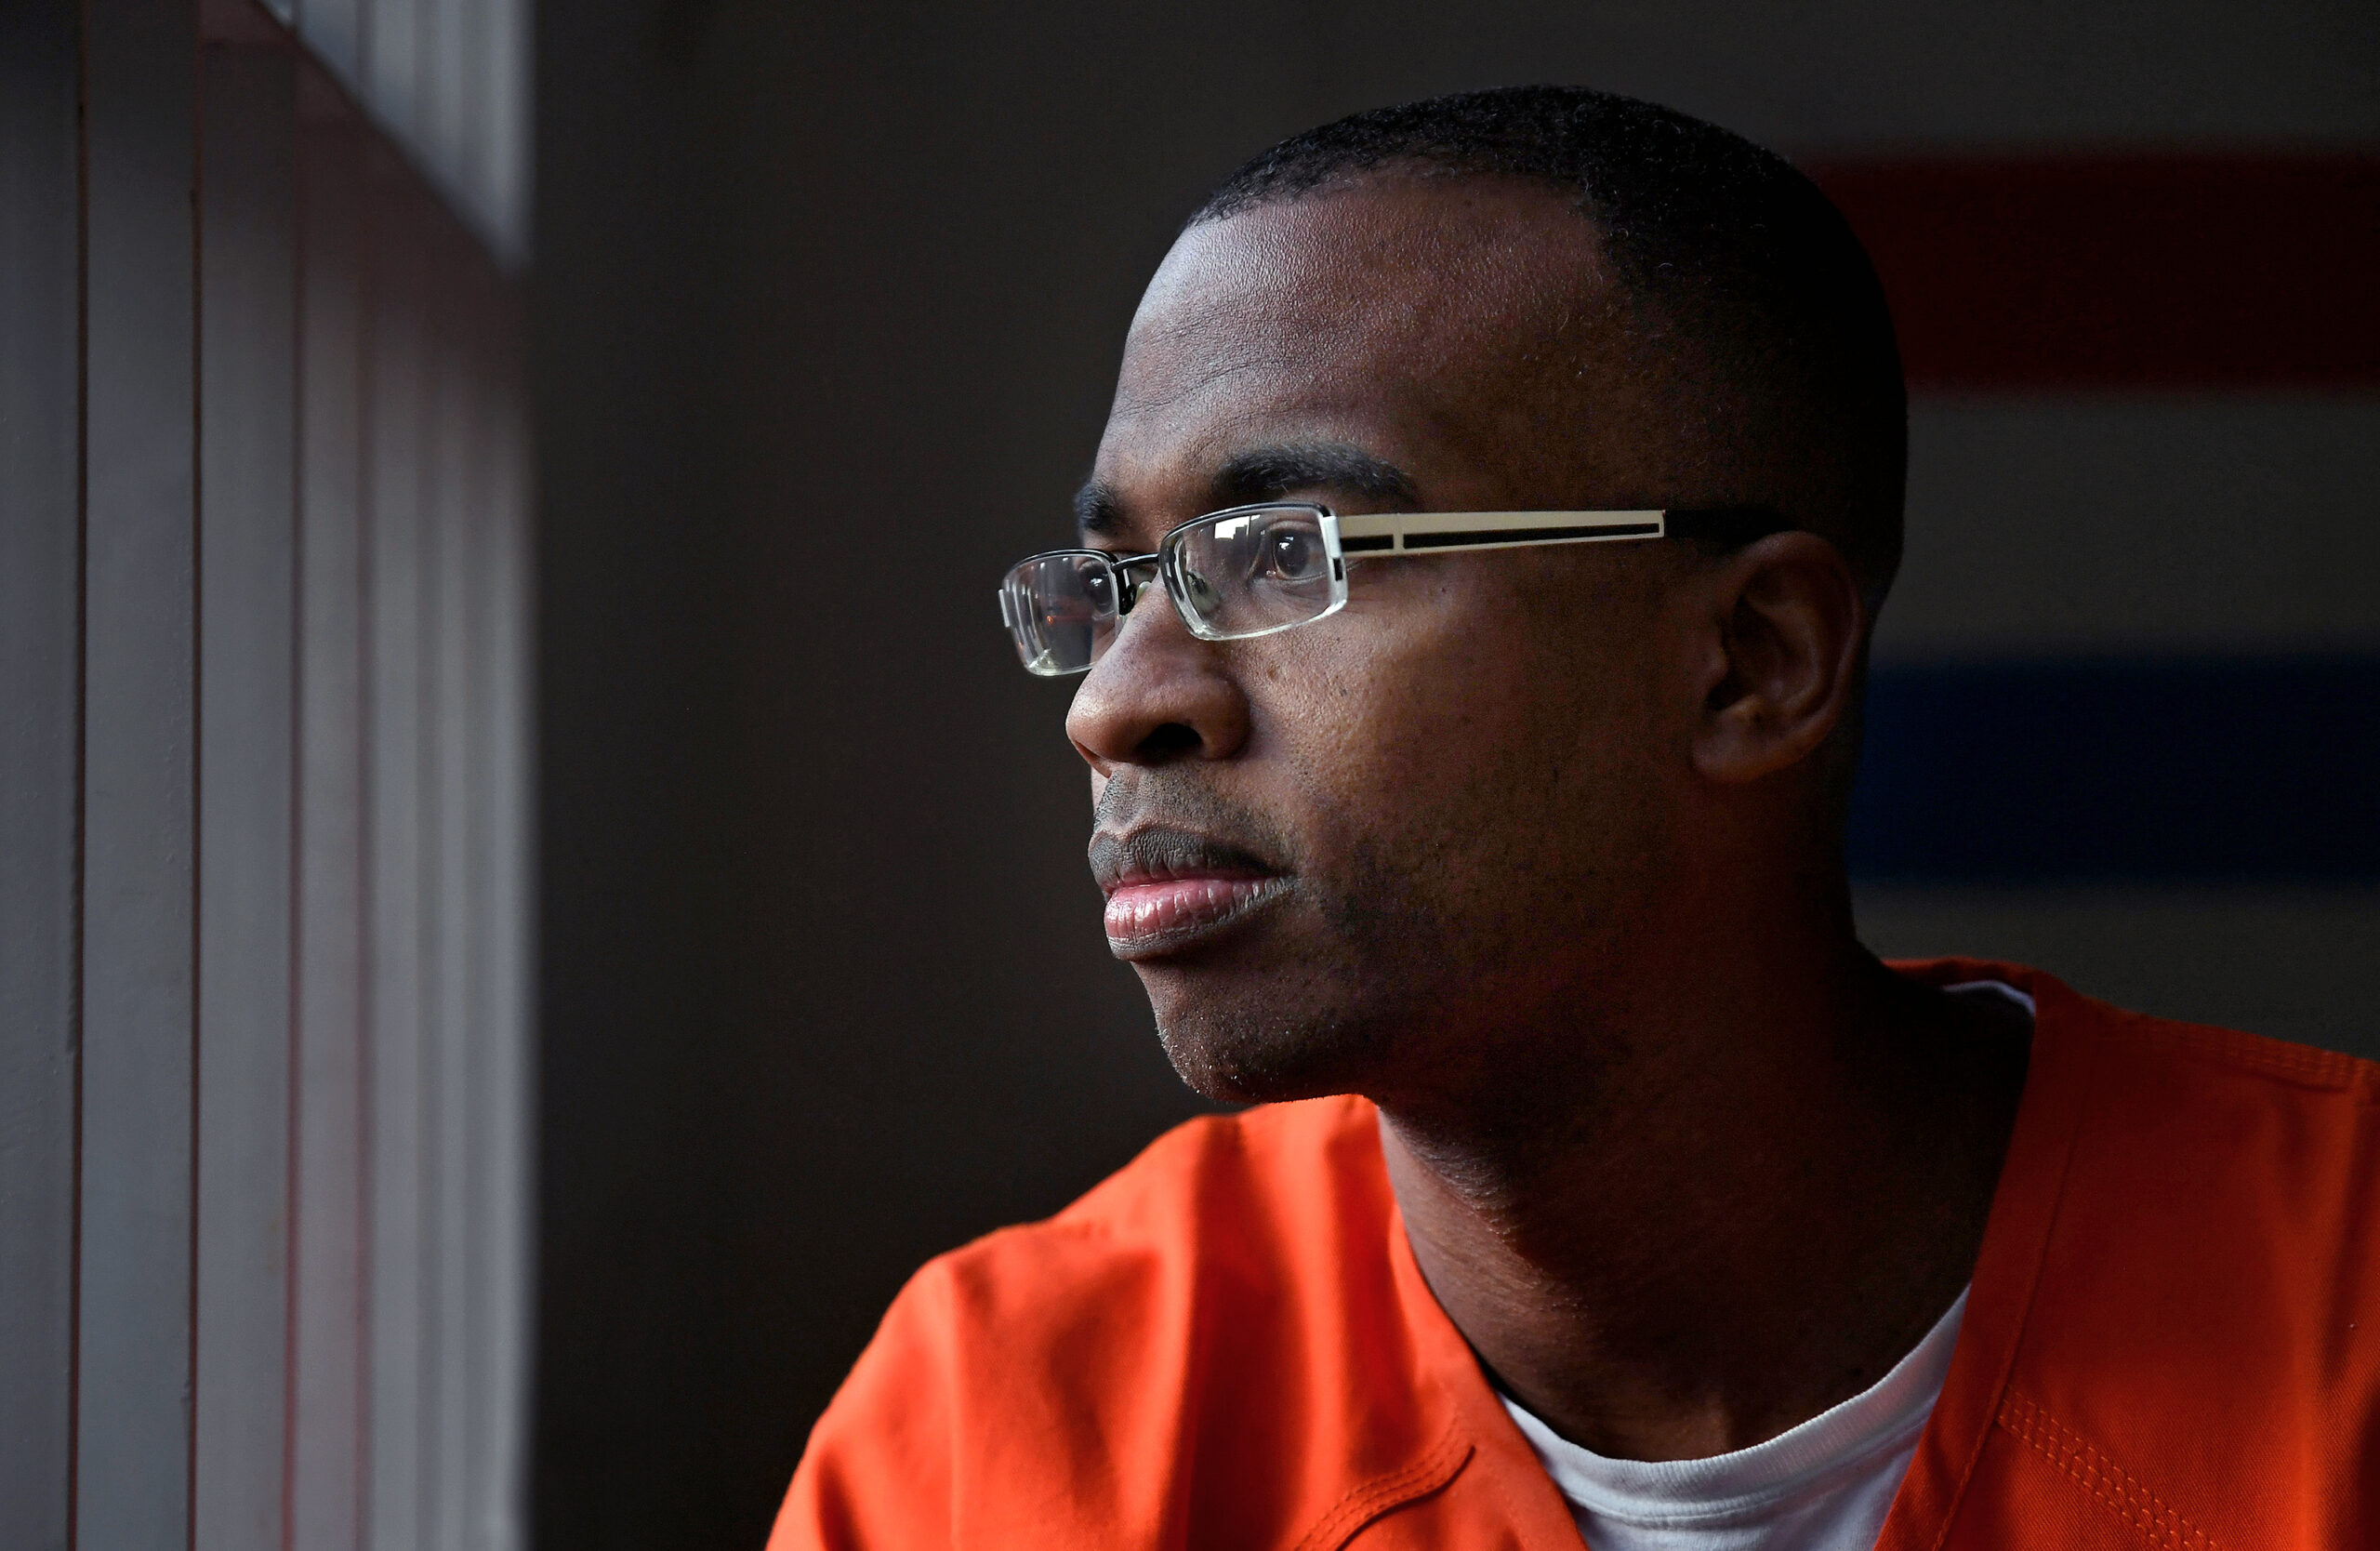 Joel Caston portrait: Man in prison jumpsuit with glasses